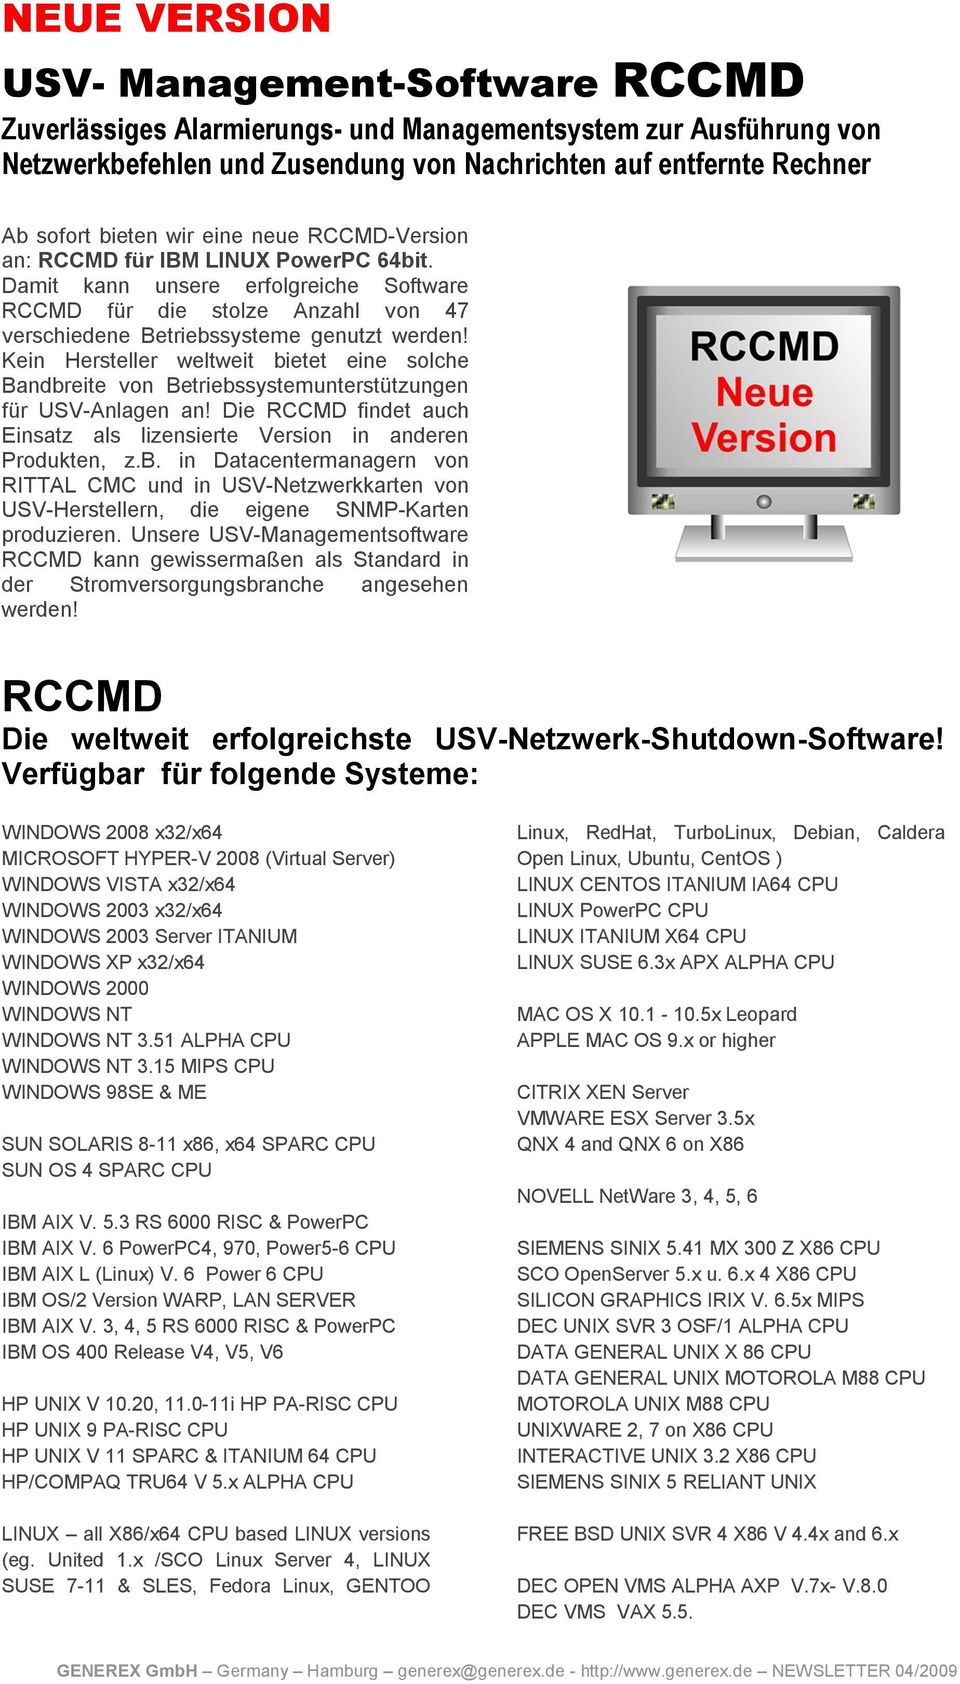 Kein Hersteller weltweit bietet eine solche Bandbreite von Betriebssystemunterstützungen für USV-Anlagen an! Die RCCMD findet auch Einsatz als lizensierte Version in anderen Produkten, z.b. in Datacentermanagern von RITTAL CMC und in USV-Netzwerkkarten von USV-Herstellern, die eigene SNMP-Karten produzieren.